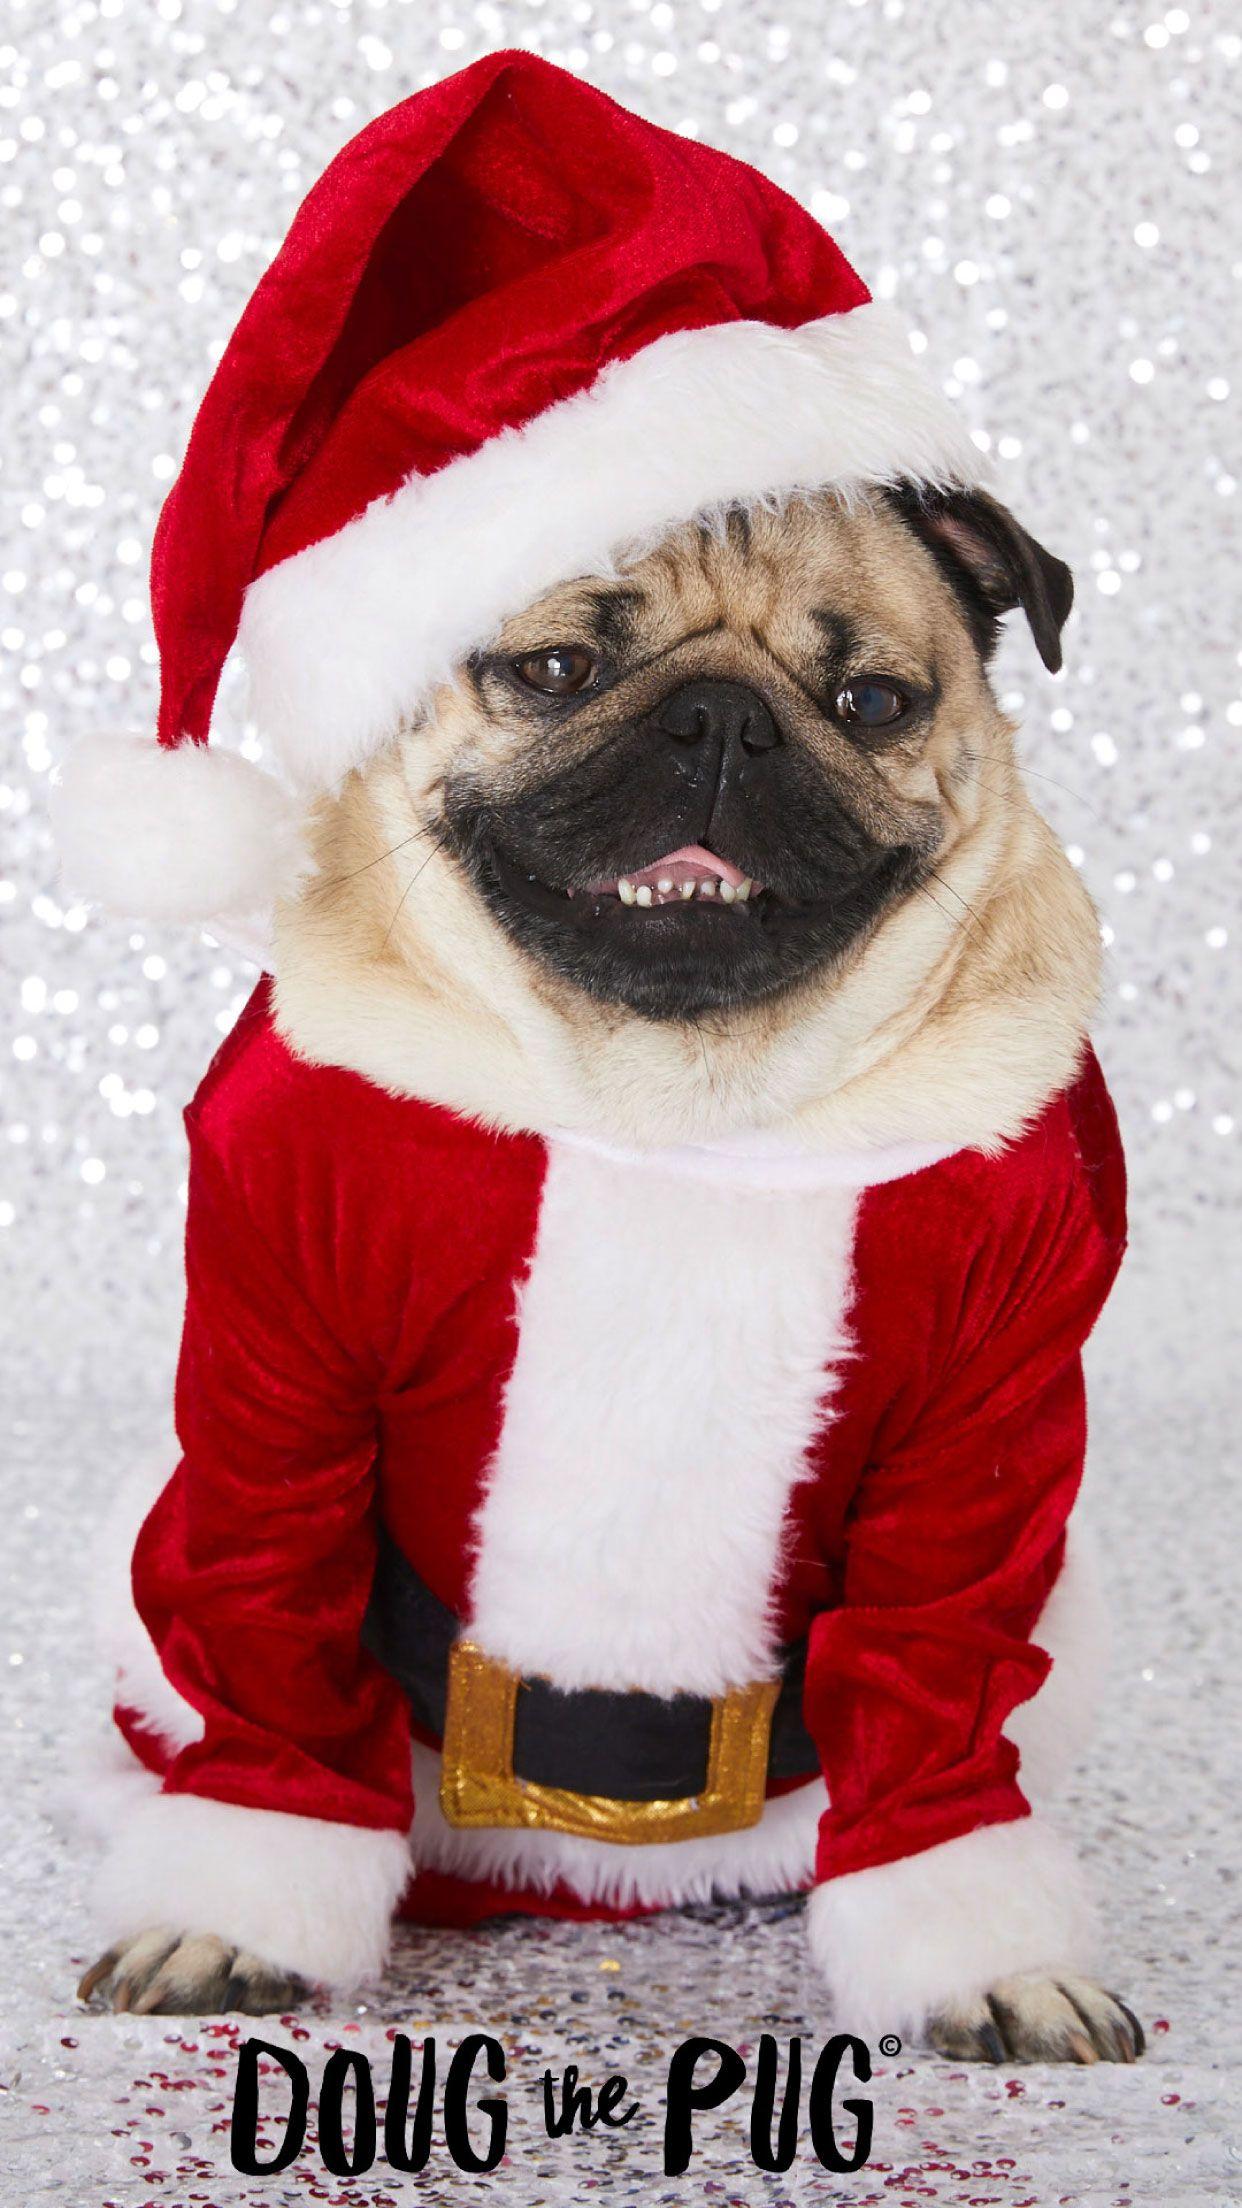 FREE Doug the Pug Christmas Wallpaper - #ClairesBlog. Pug christmas, Pug wallpaper, Doug